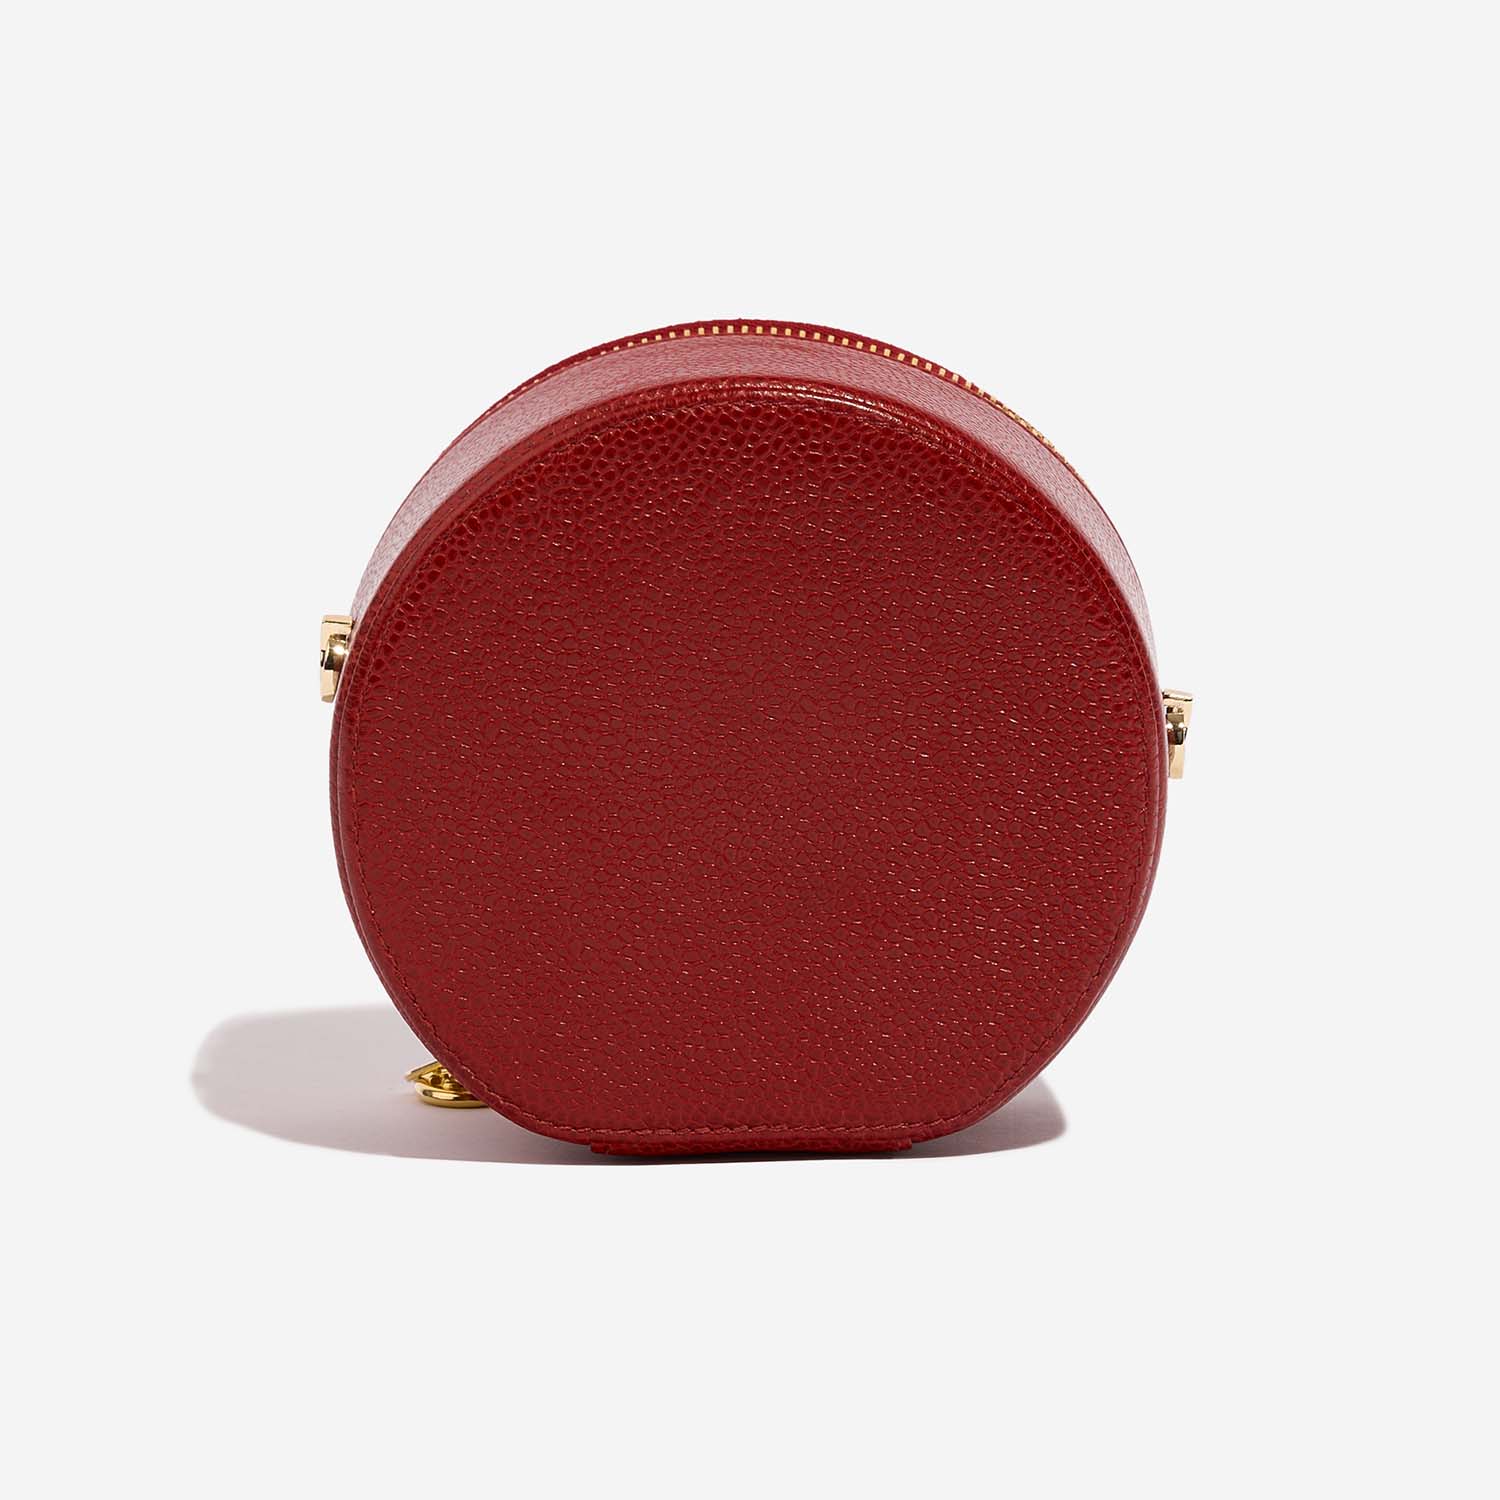 Chanel Vanity small Red Back | Verkaufen Sie Ihre Designer-Tasche auf Saclab.com